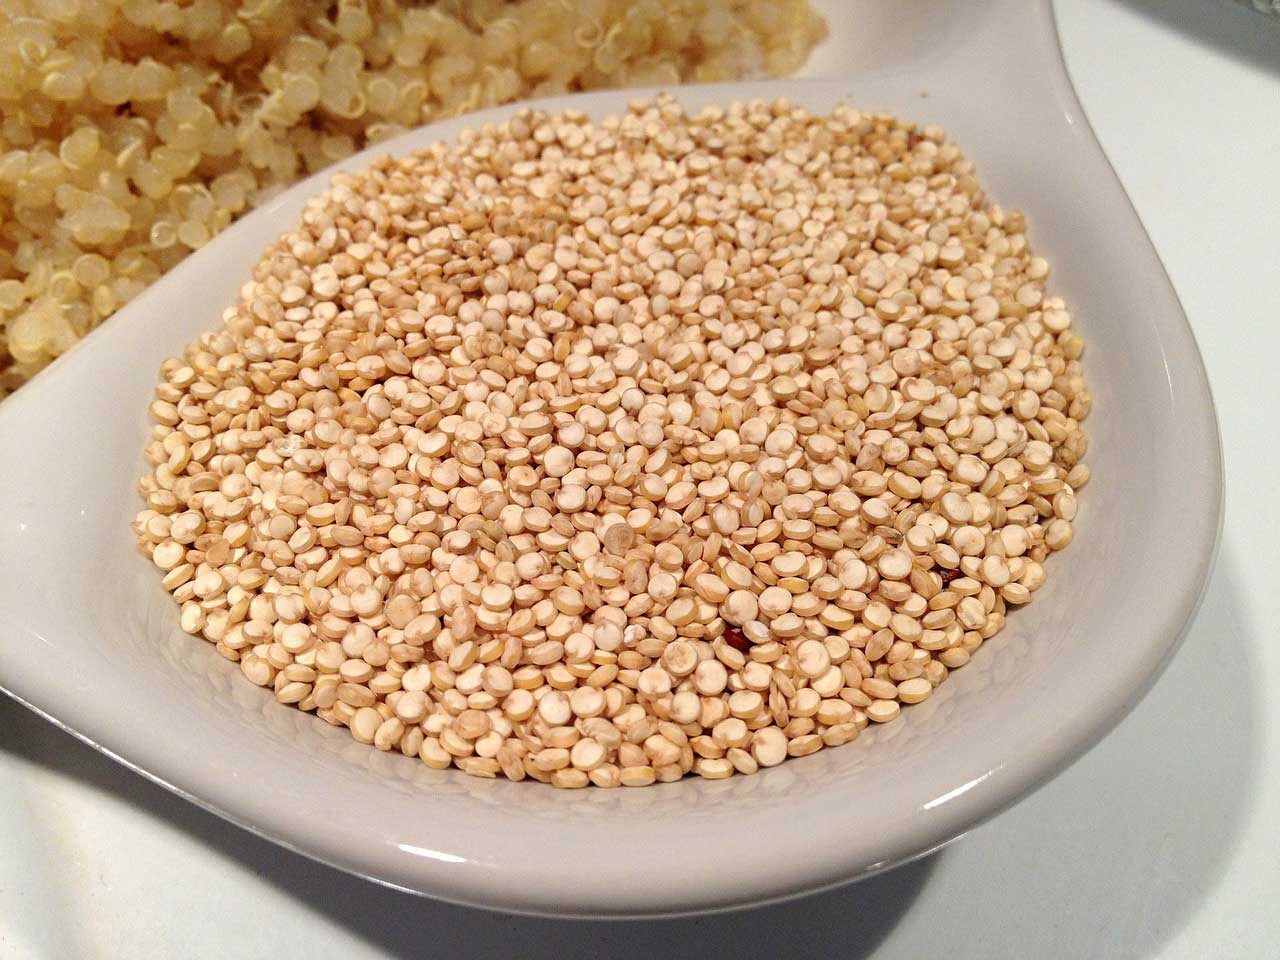 Méz és só ízületi betegségből, Quinoa ízületi betegségből